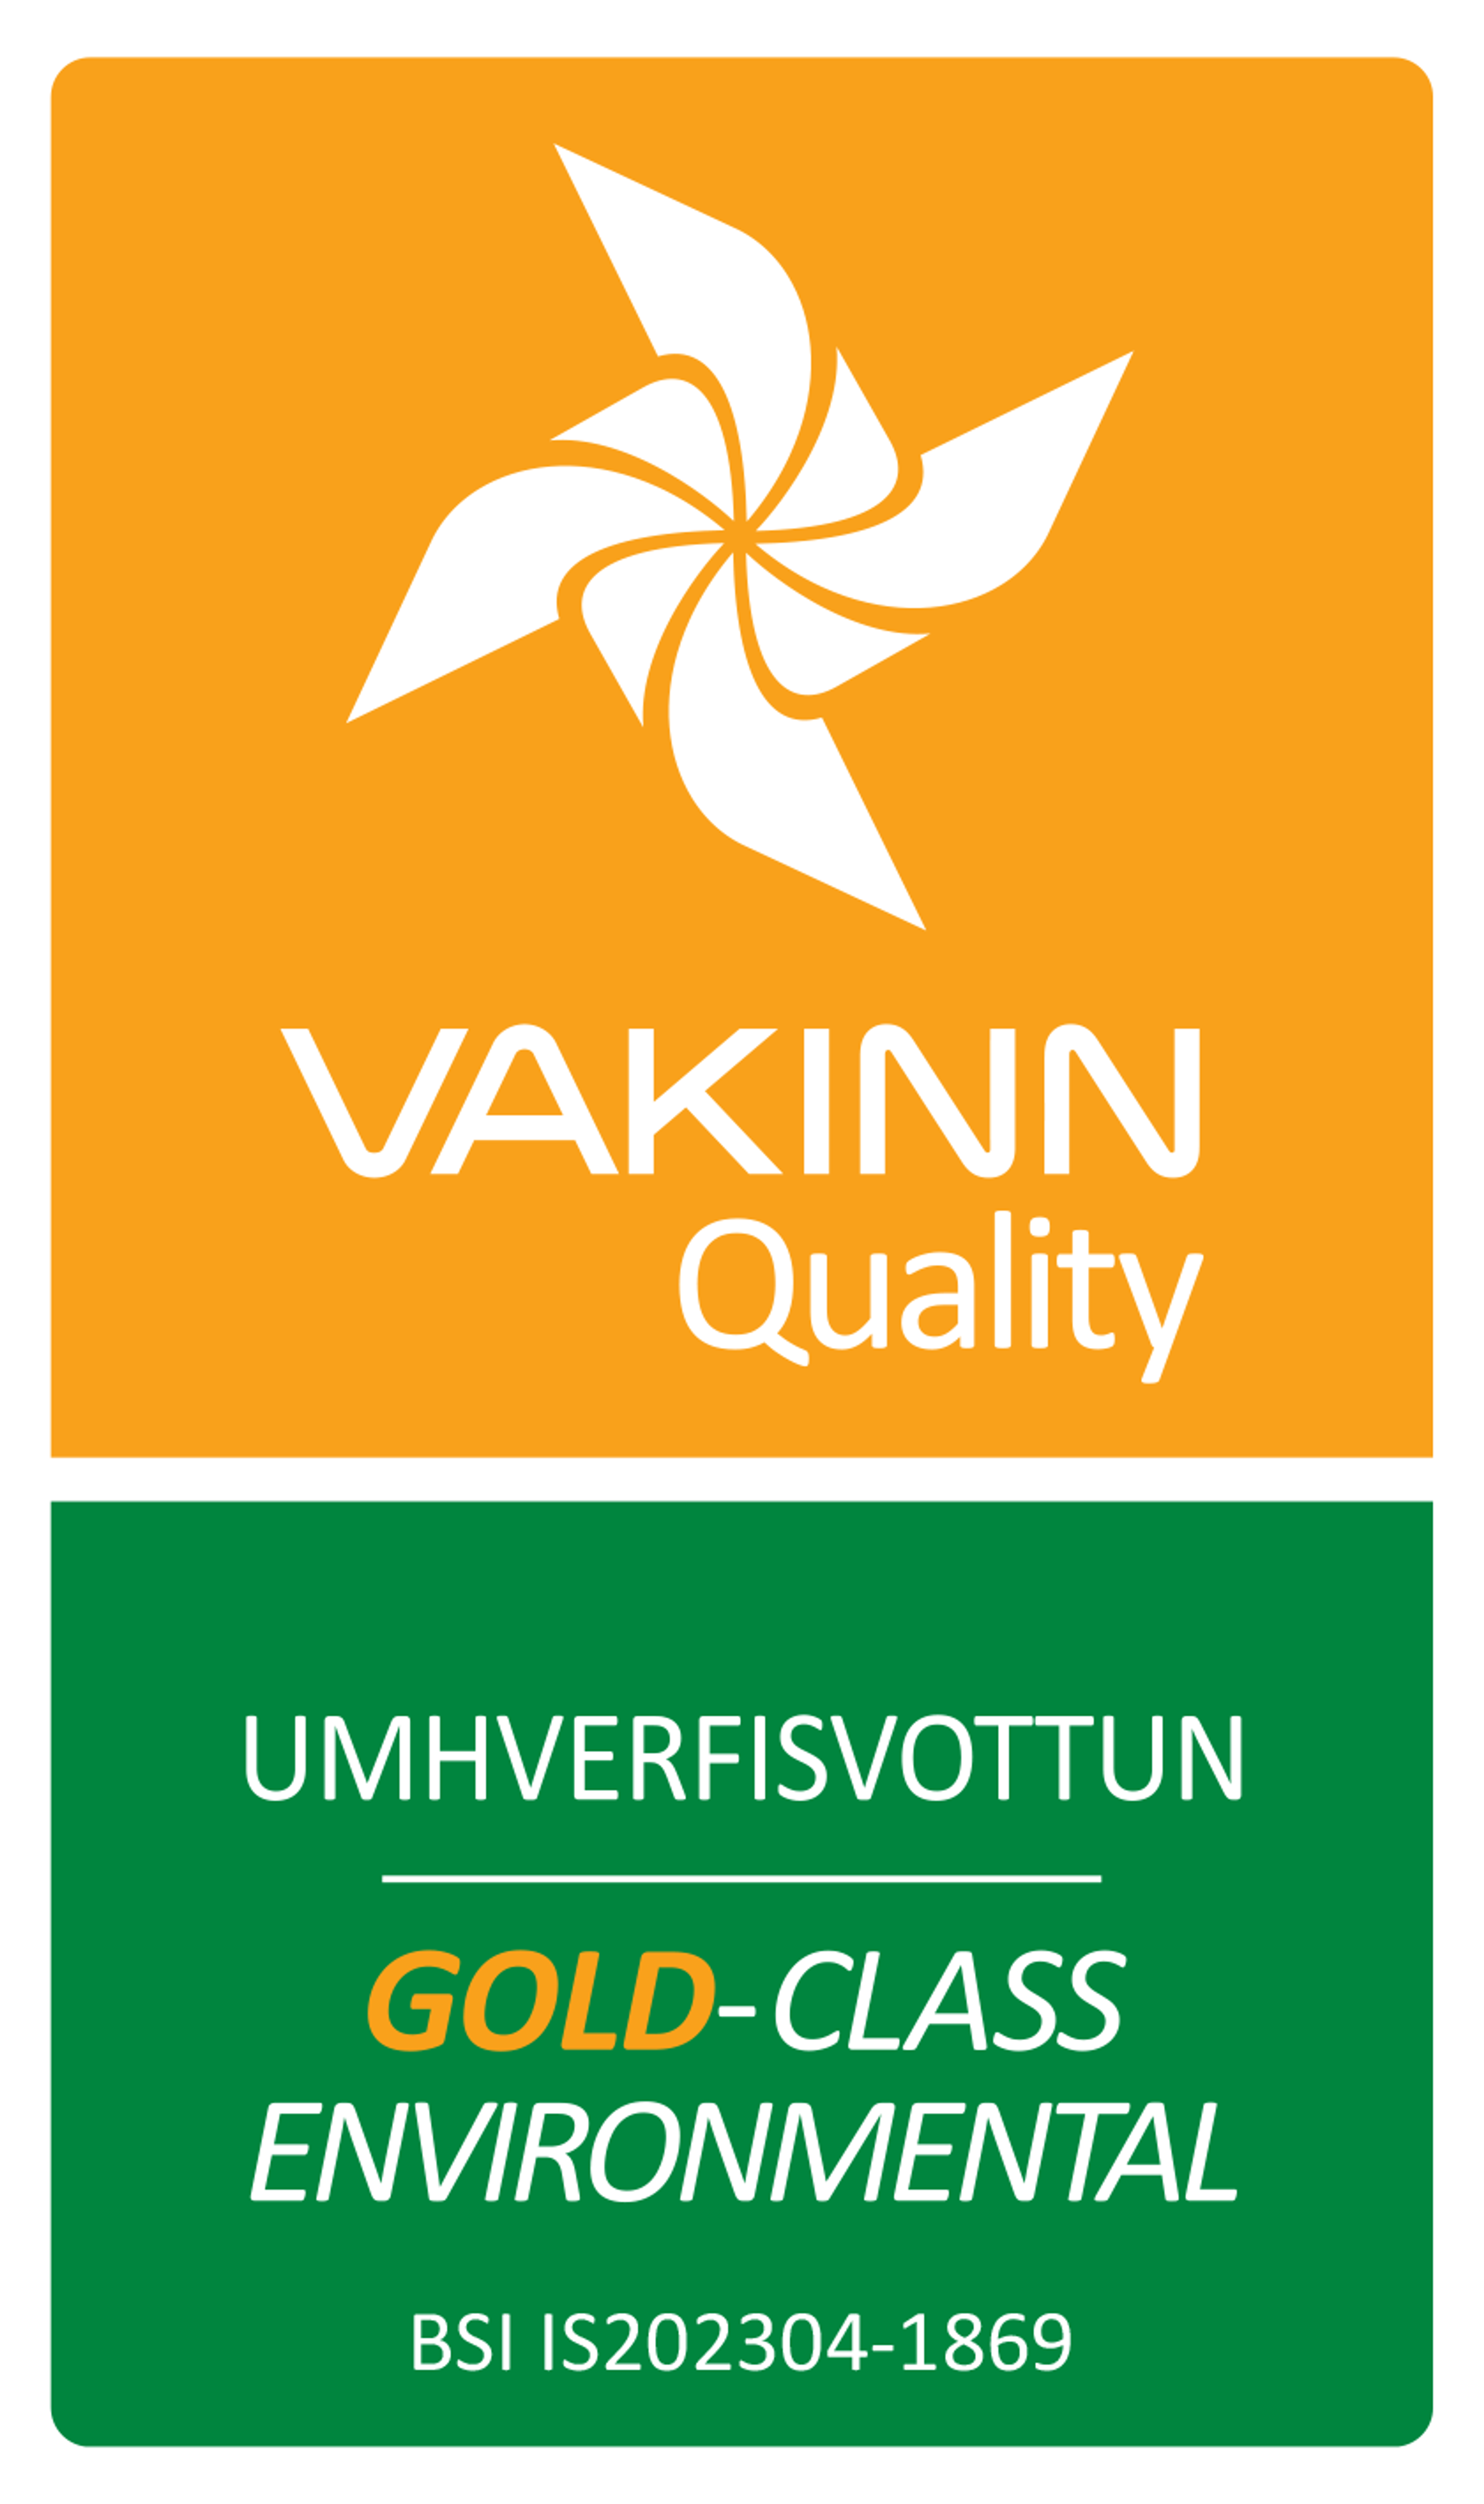 Vakinn Certification Gold-Class environmental